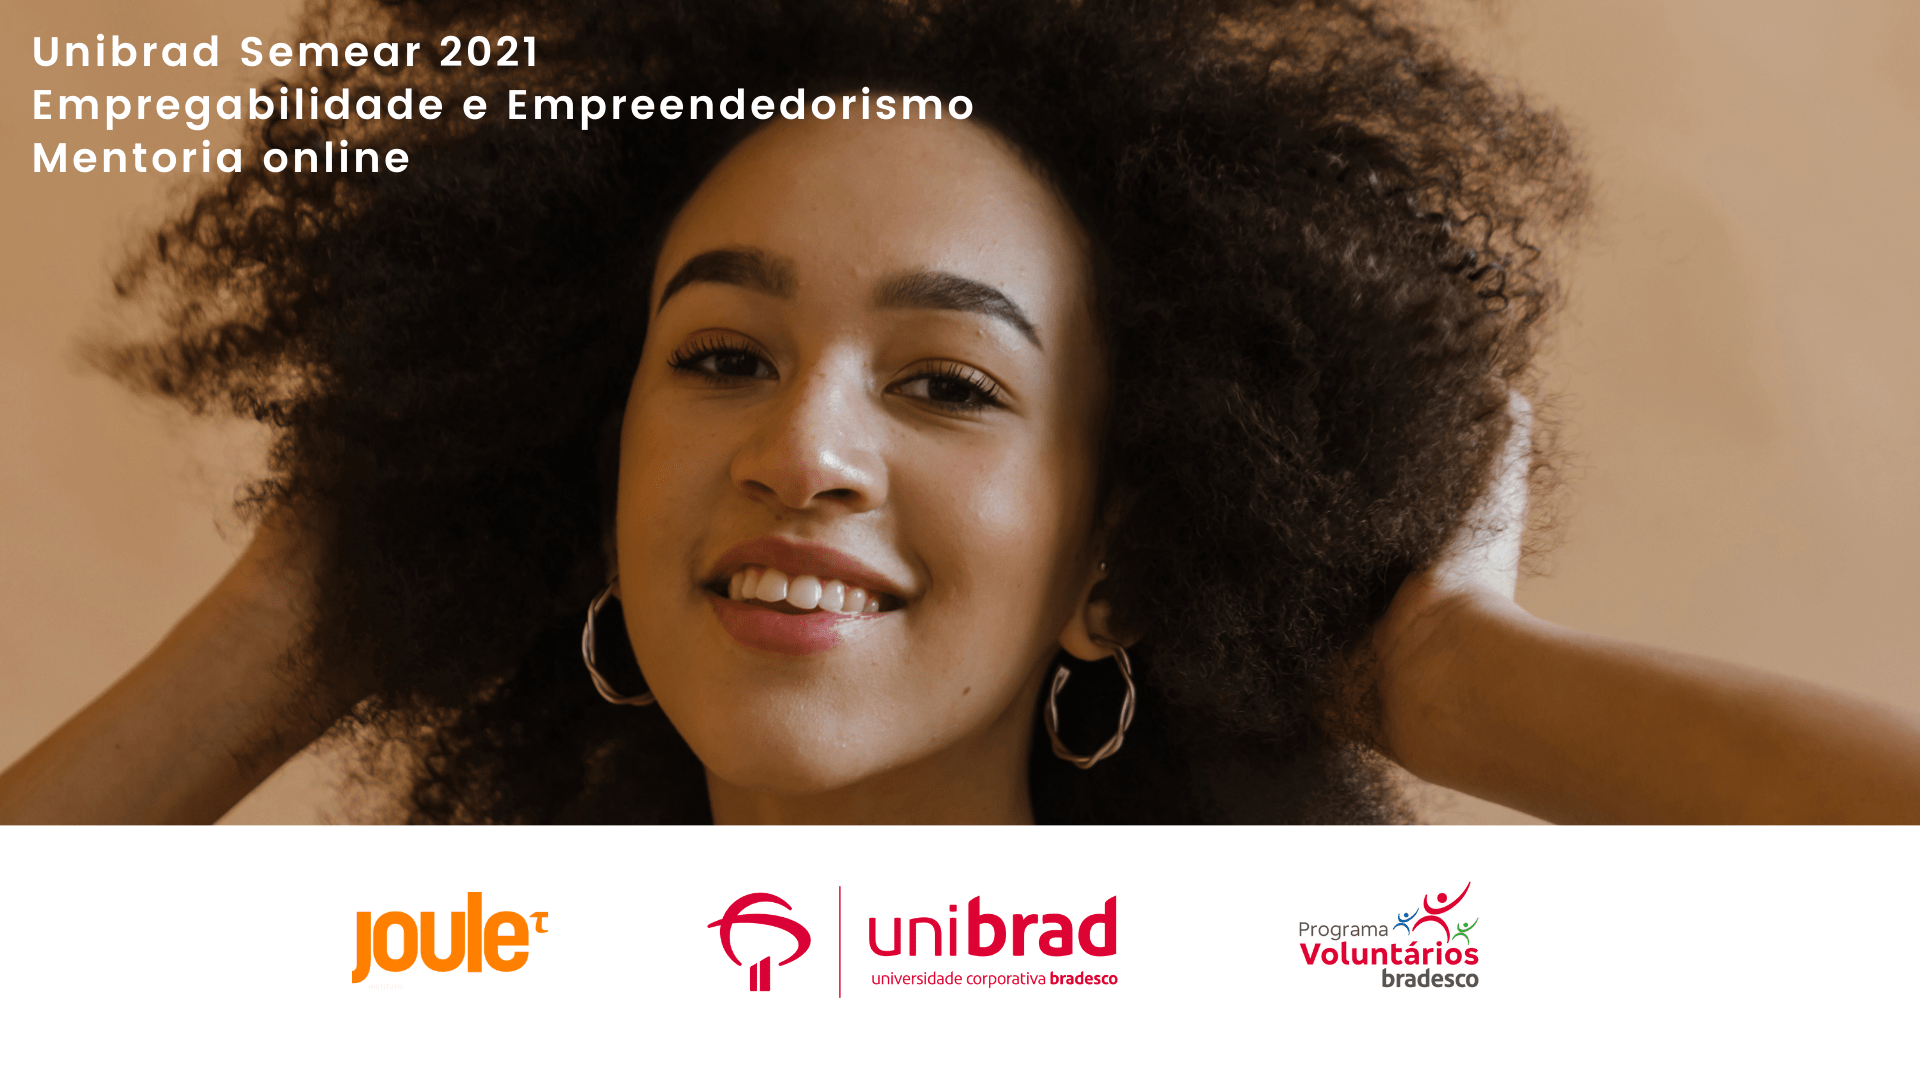 O Bradesco lança a segunda edição do Projeto Unibrad Semear, com foco em empregabilidade e empreendedorismo, em parceria com o Joule!